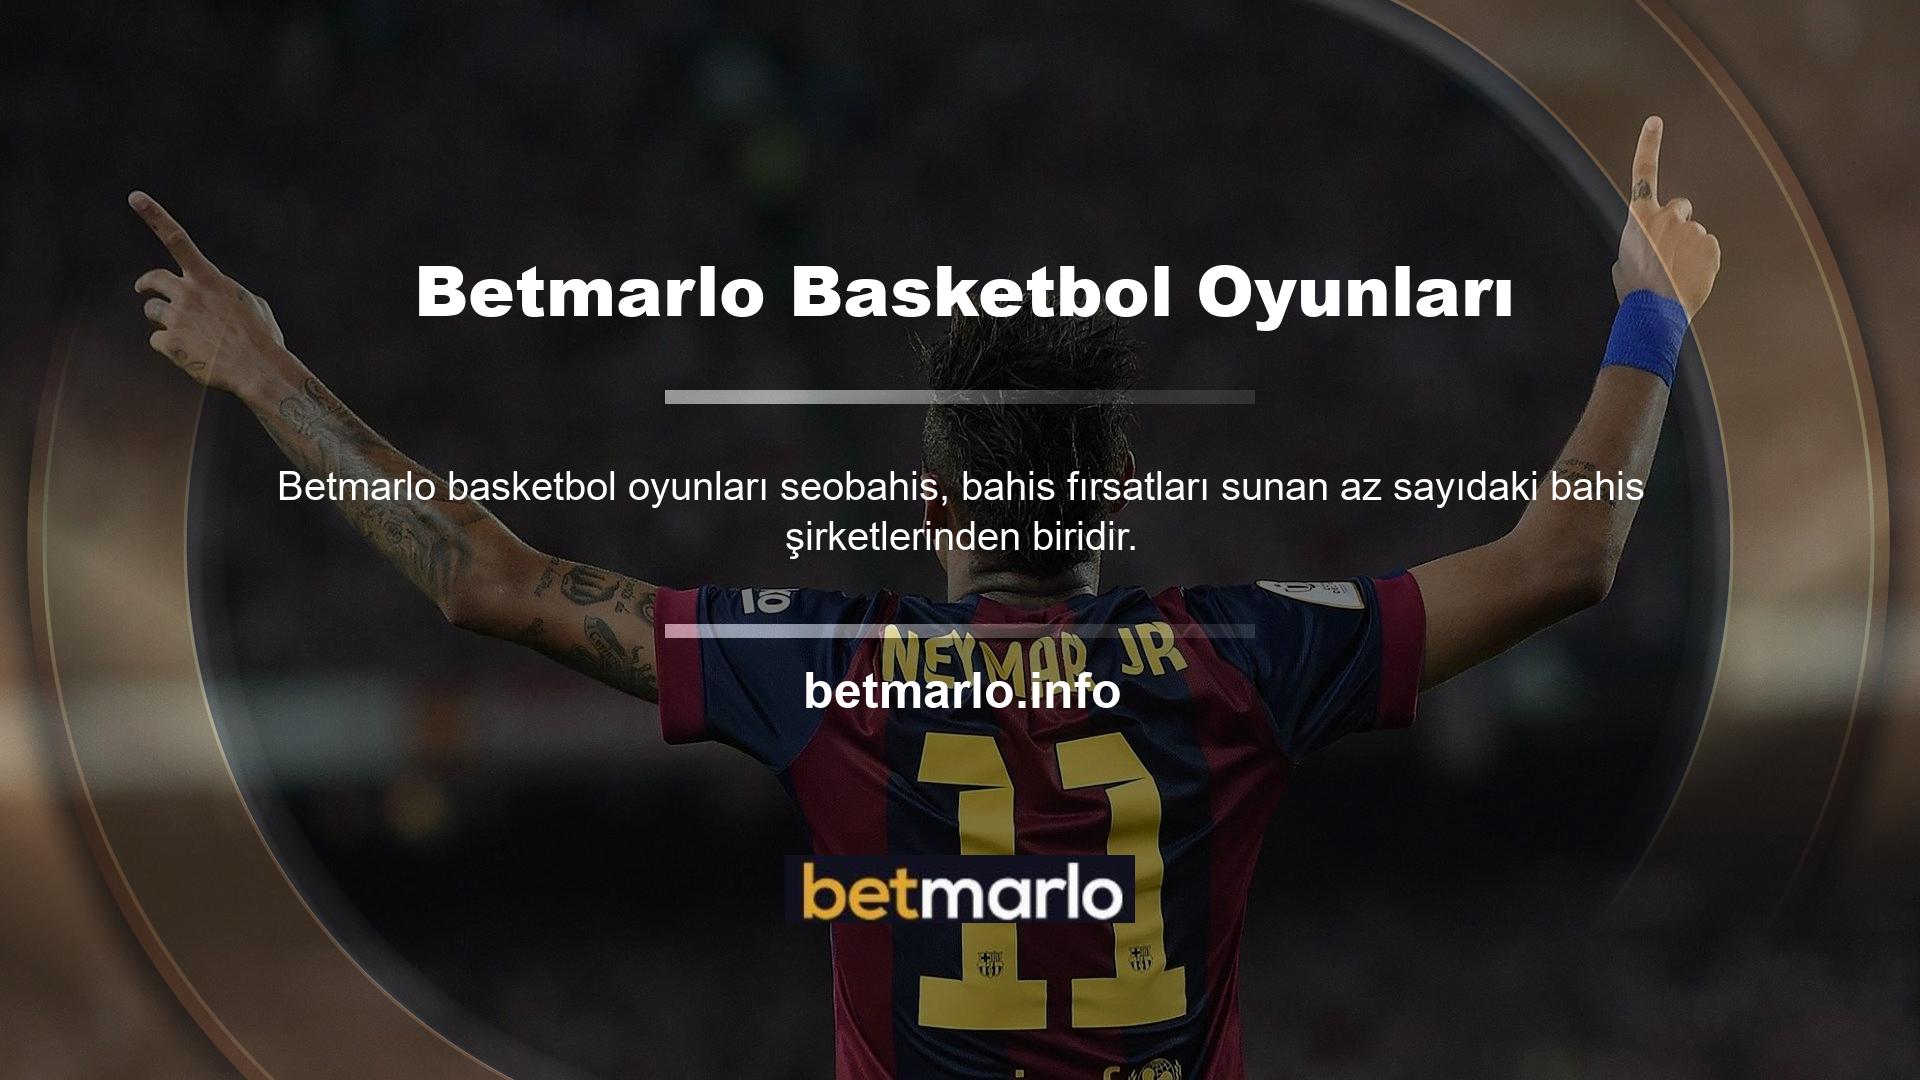 Burada diğer Betmarlo müşterileri tarafından sunulan basketbol bahislerini bulabilirsiniz